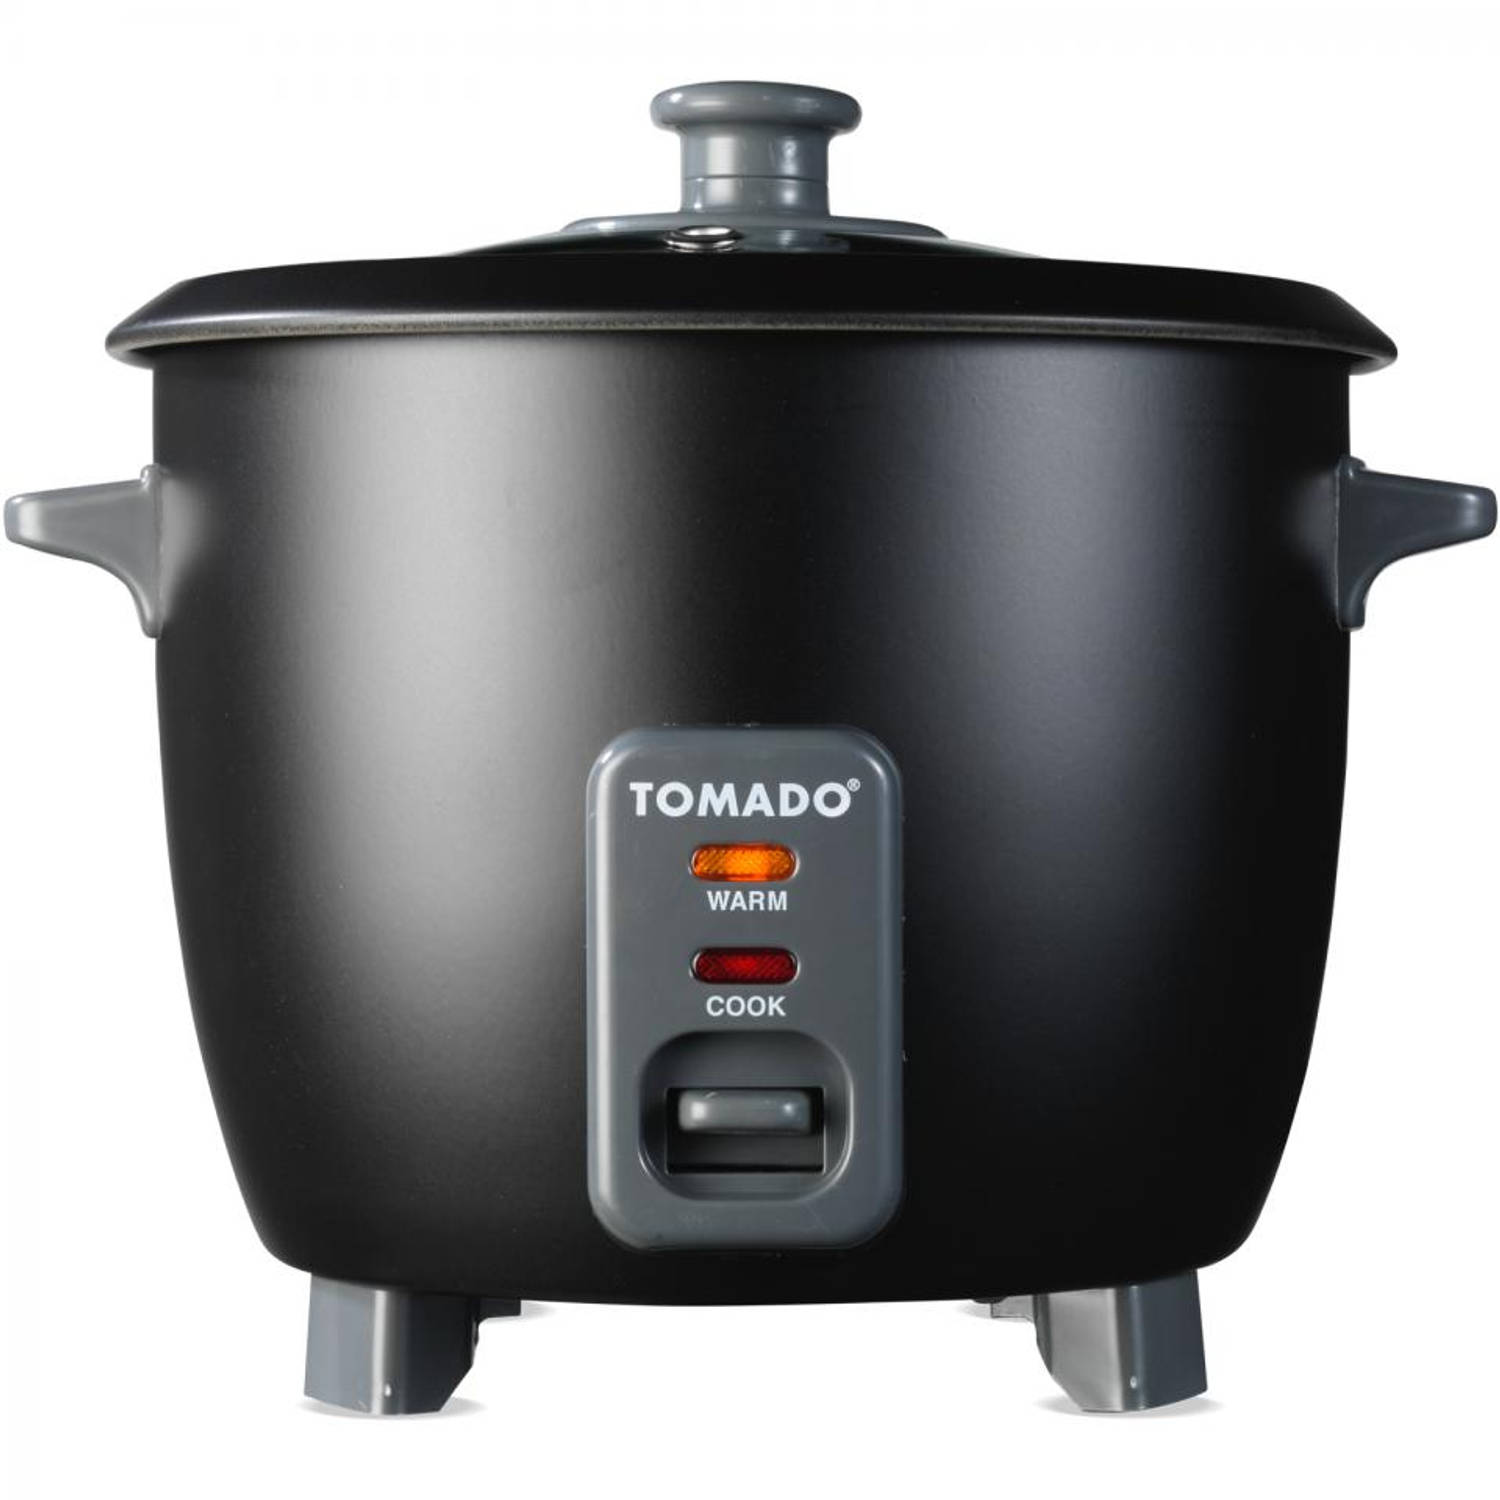 gemak Aziatisch Varken Tomado rijstkoker - TM-5557 - 0.8 liter | Blokker